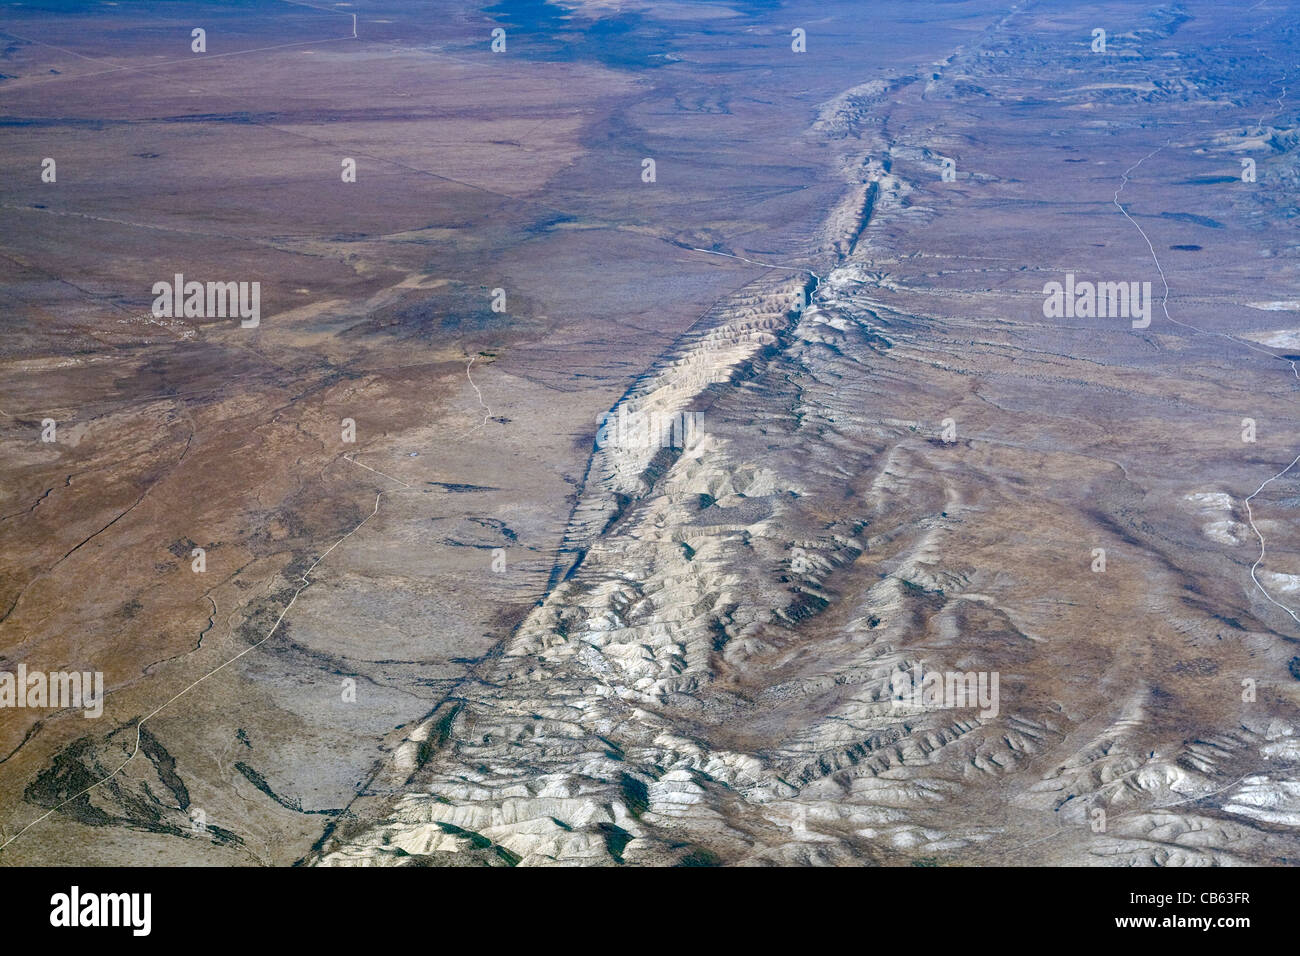 Vue aérienne de la faille de San Andreas dans la plaine de Carrizo de la Californie. Banque D'Images